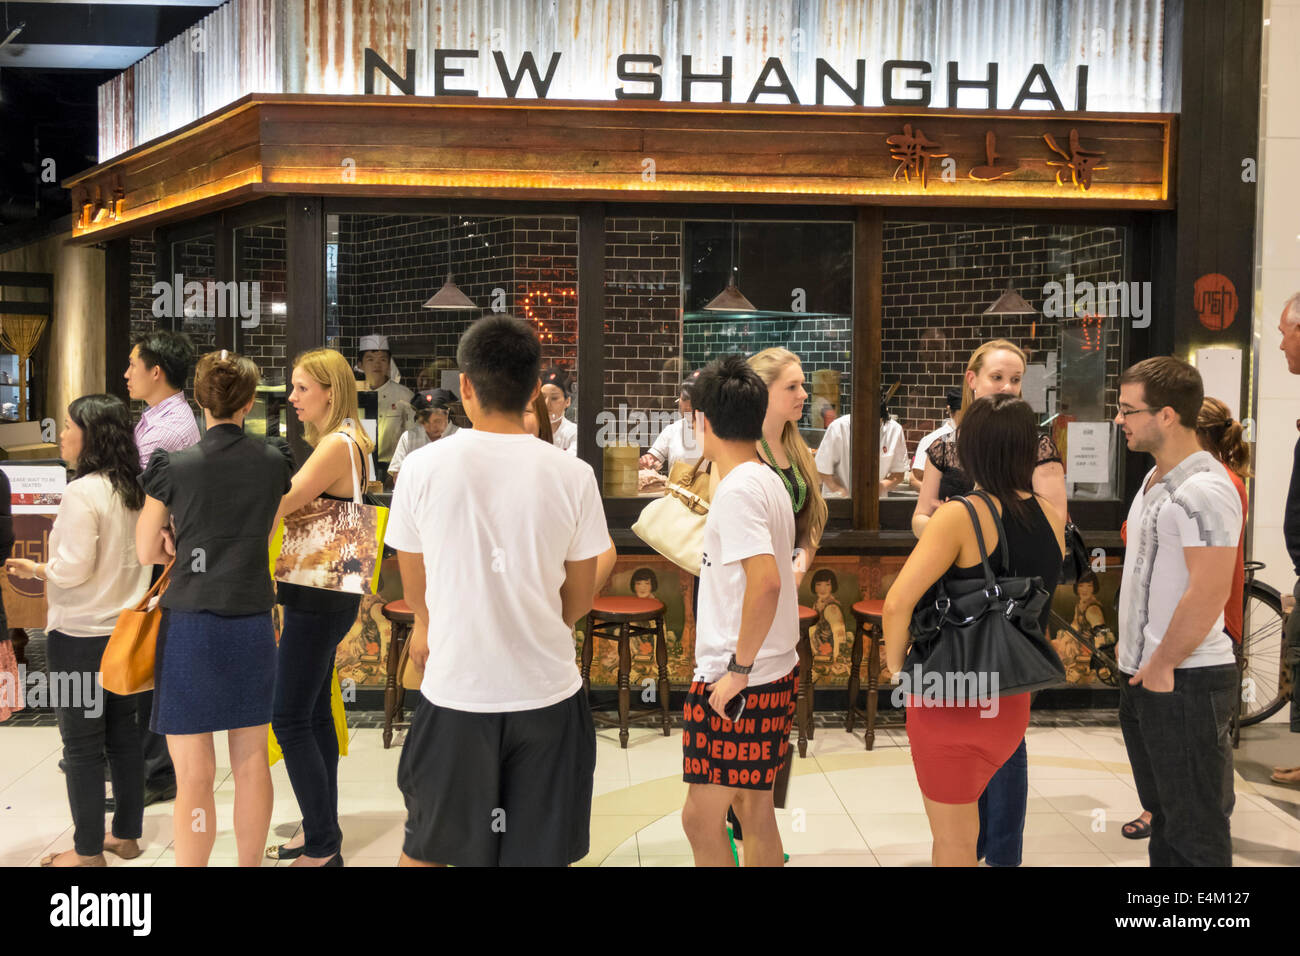 Brisbane Australia,Queen Street Mall,New Shanghai,ristoranti ristoranti ristorazione cafe cafe',line,queue,queuing,clienti,popolari,in attesa,AU1403141 Foto Stock